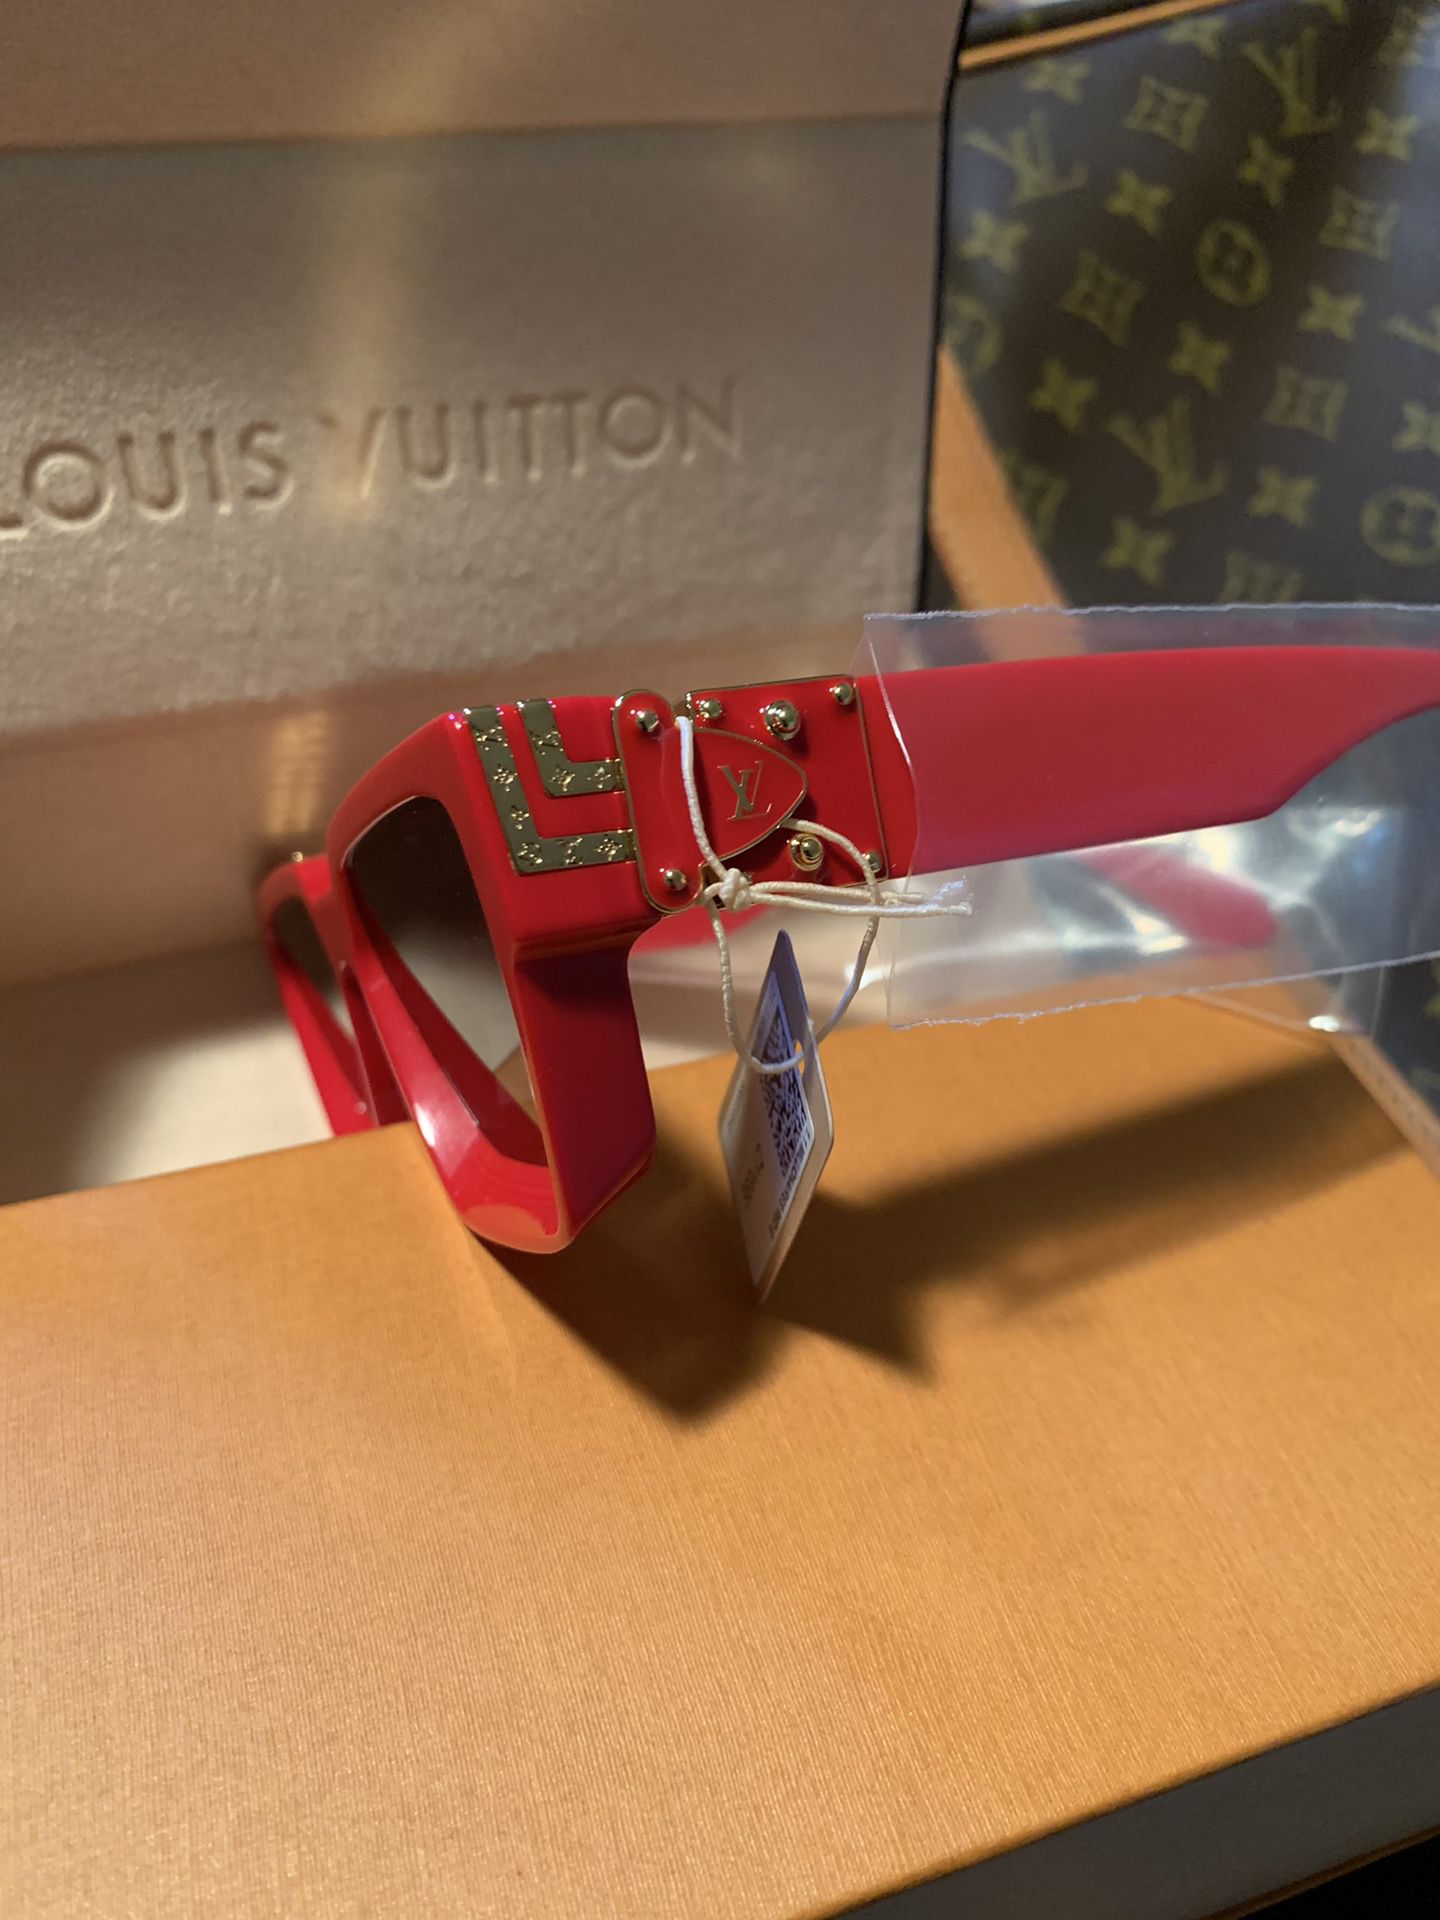 Louis Vuitton - 1.1 Millionaires Sunglasses Z1165E - - Catawiki